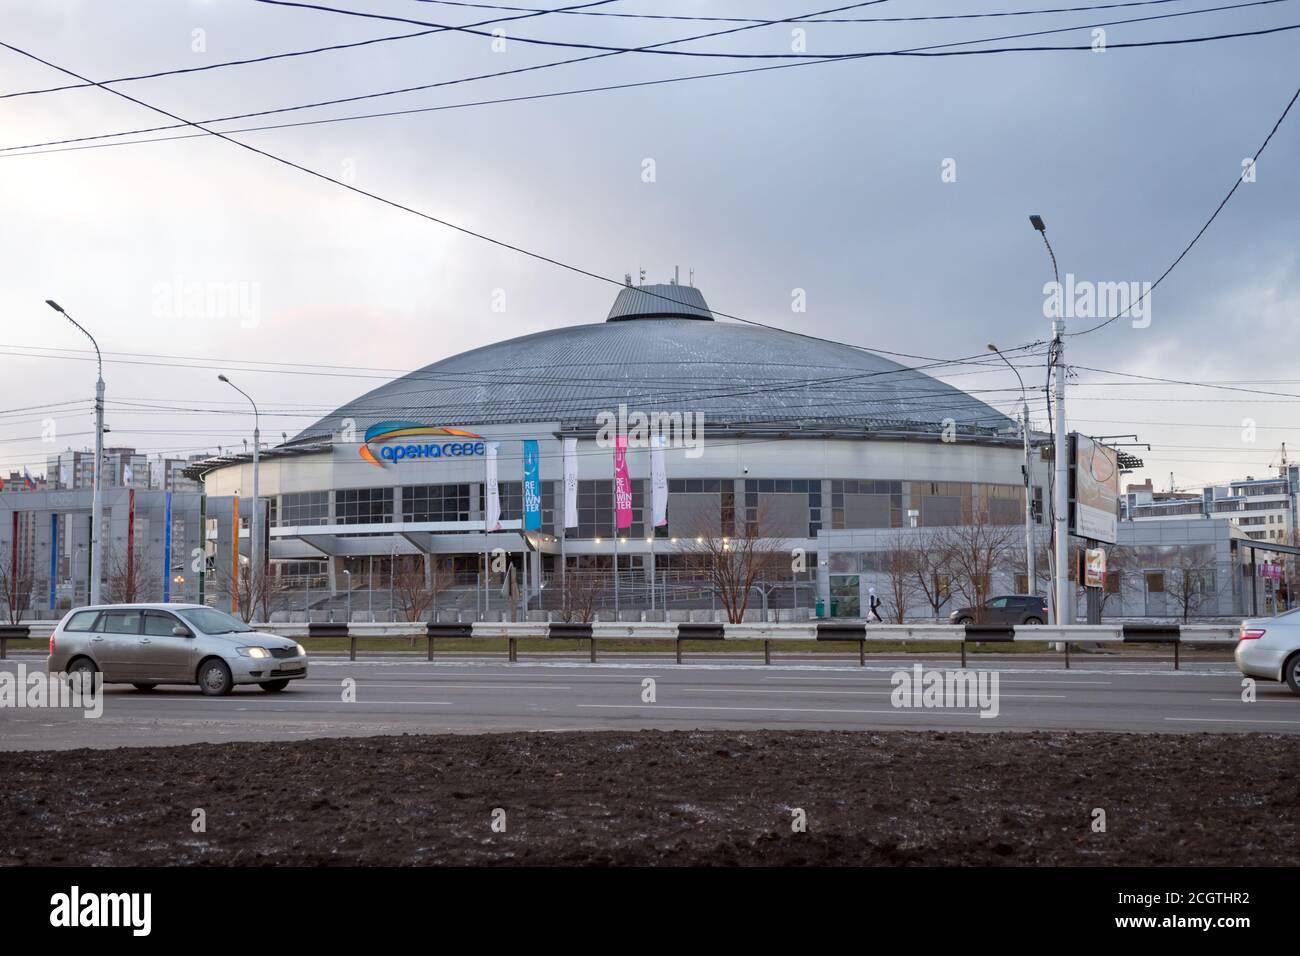 Complexe sportif multifonctionnel Arena Sever dans une soirée d'automne froide de la ville de Krasnoyarsk, construit pour l'Universiade d'hiver 2019. Banque D'Images